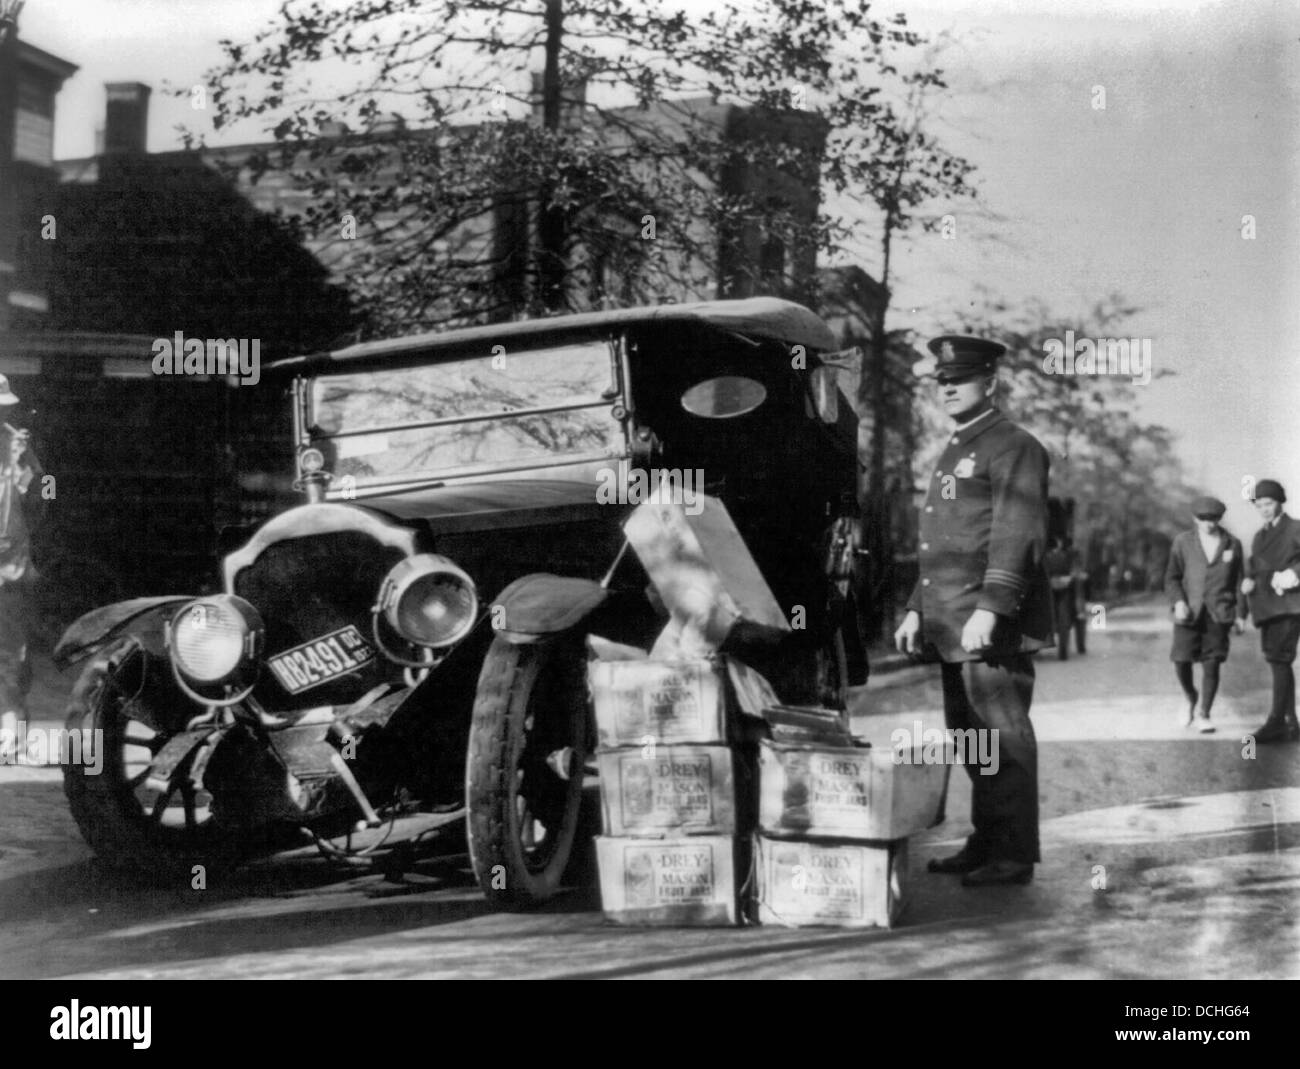 Poliziotto in piedi accanto ad auto disastrate e casi di moonshine, durante il divieto USA circa 1922 Foto Stock